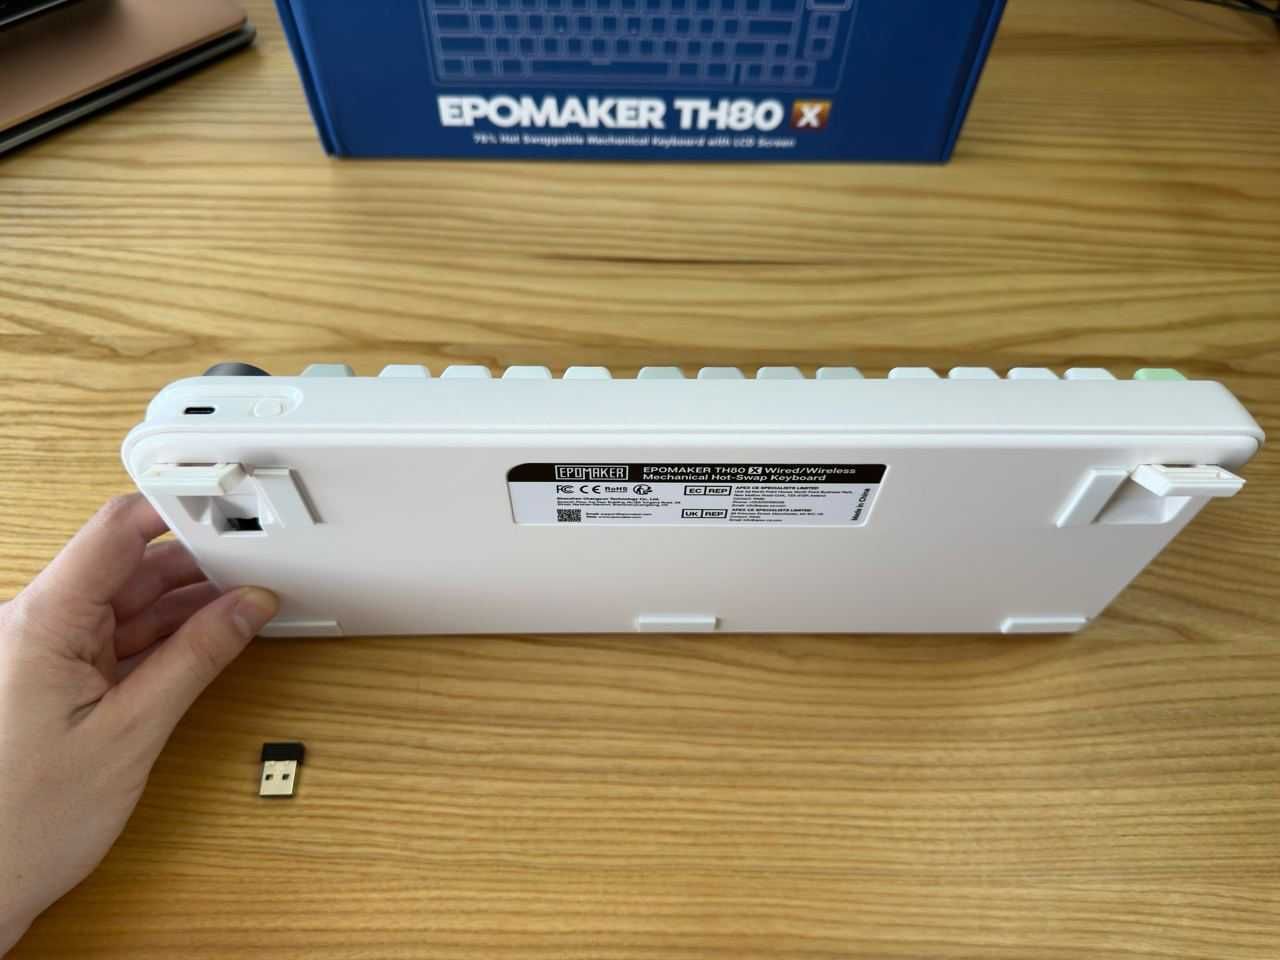 НОВАЯ Беспроводная Механическая Клавиатура - Epomaker TH80 X (Экран)